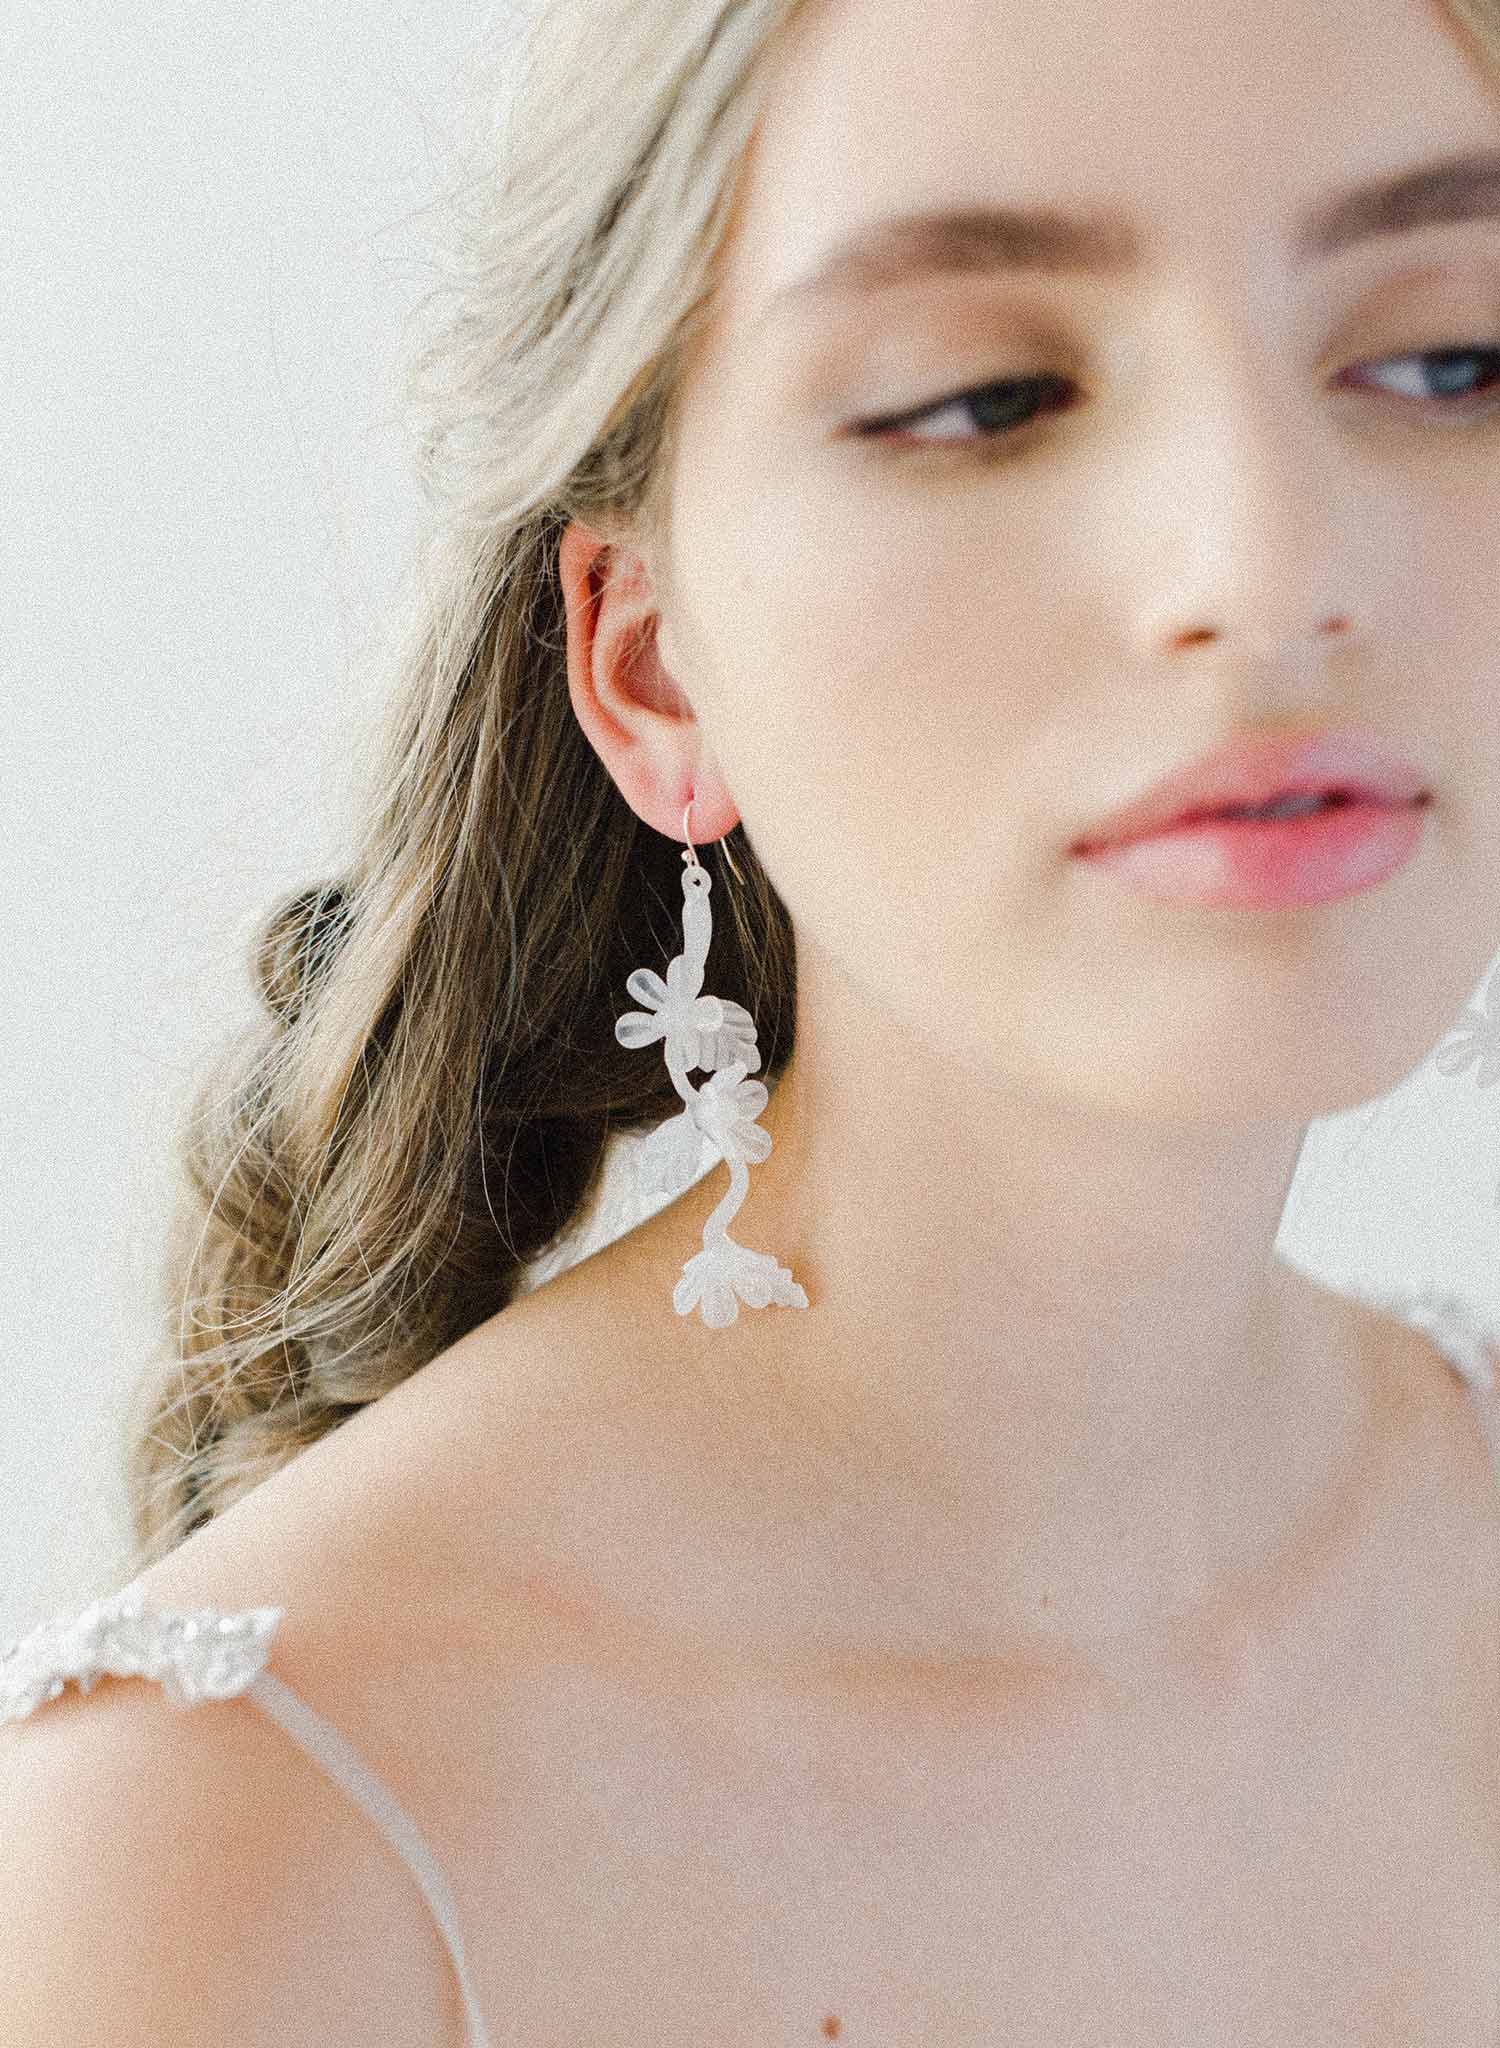 Milk glass twist drop earrings - Style #2039